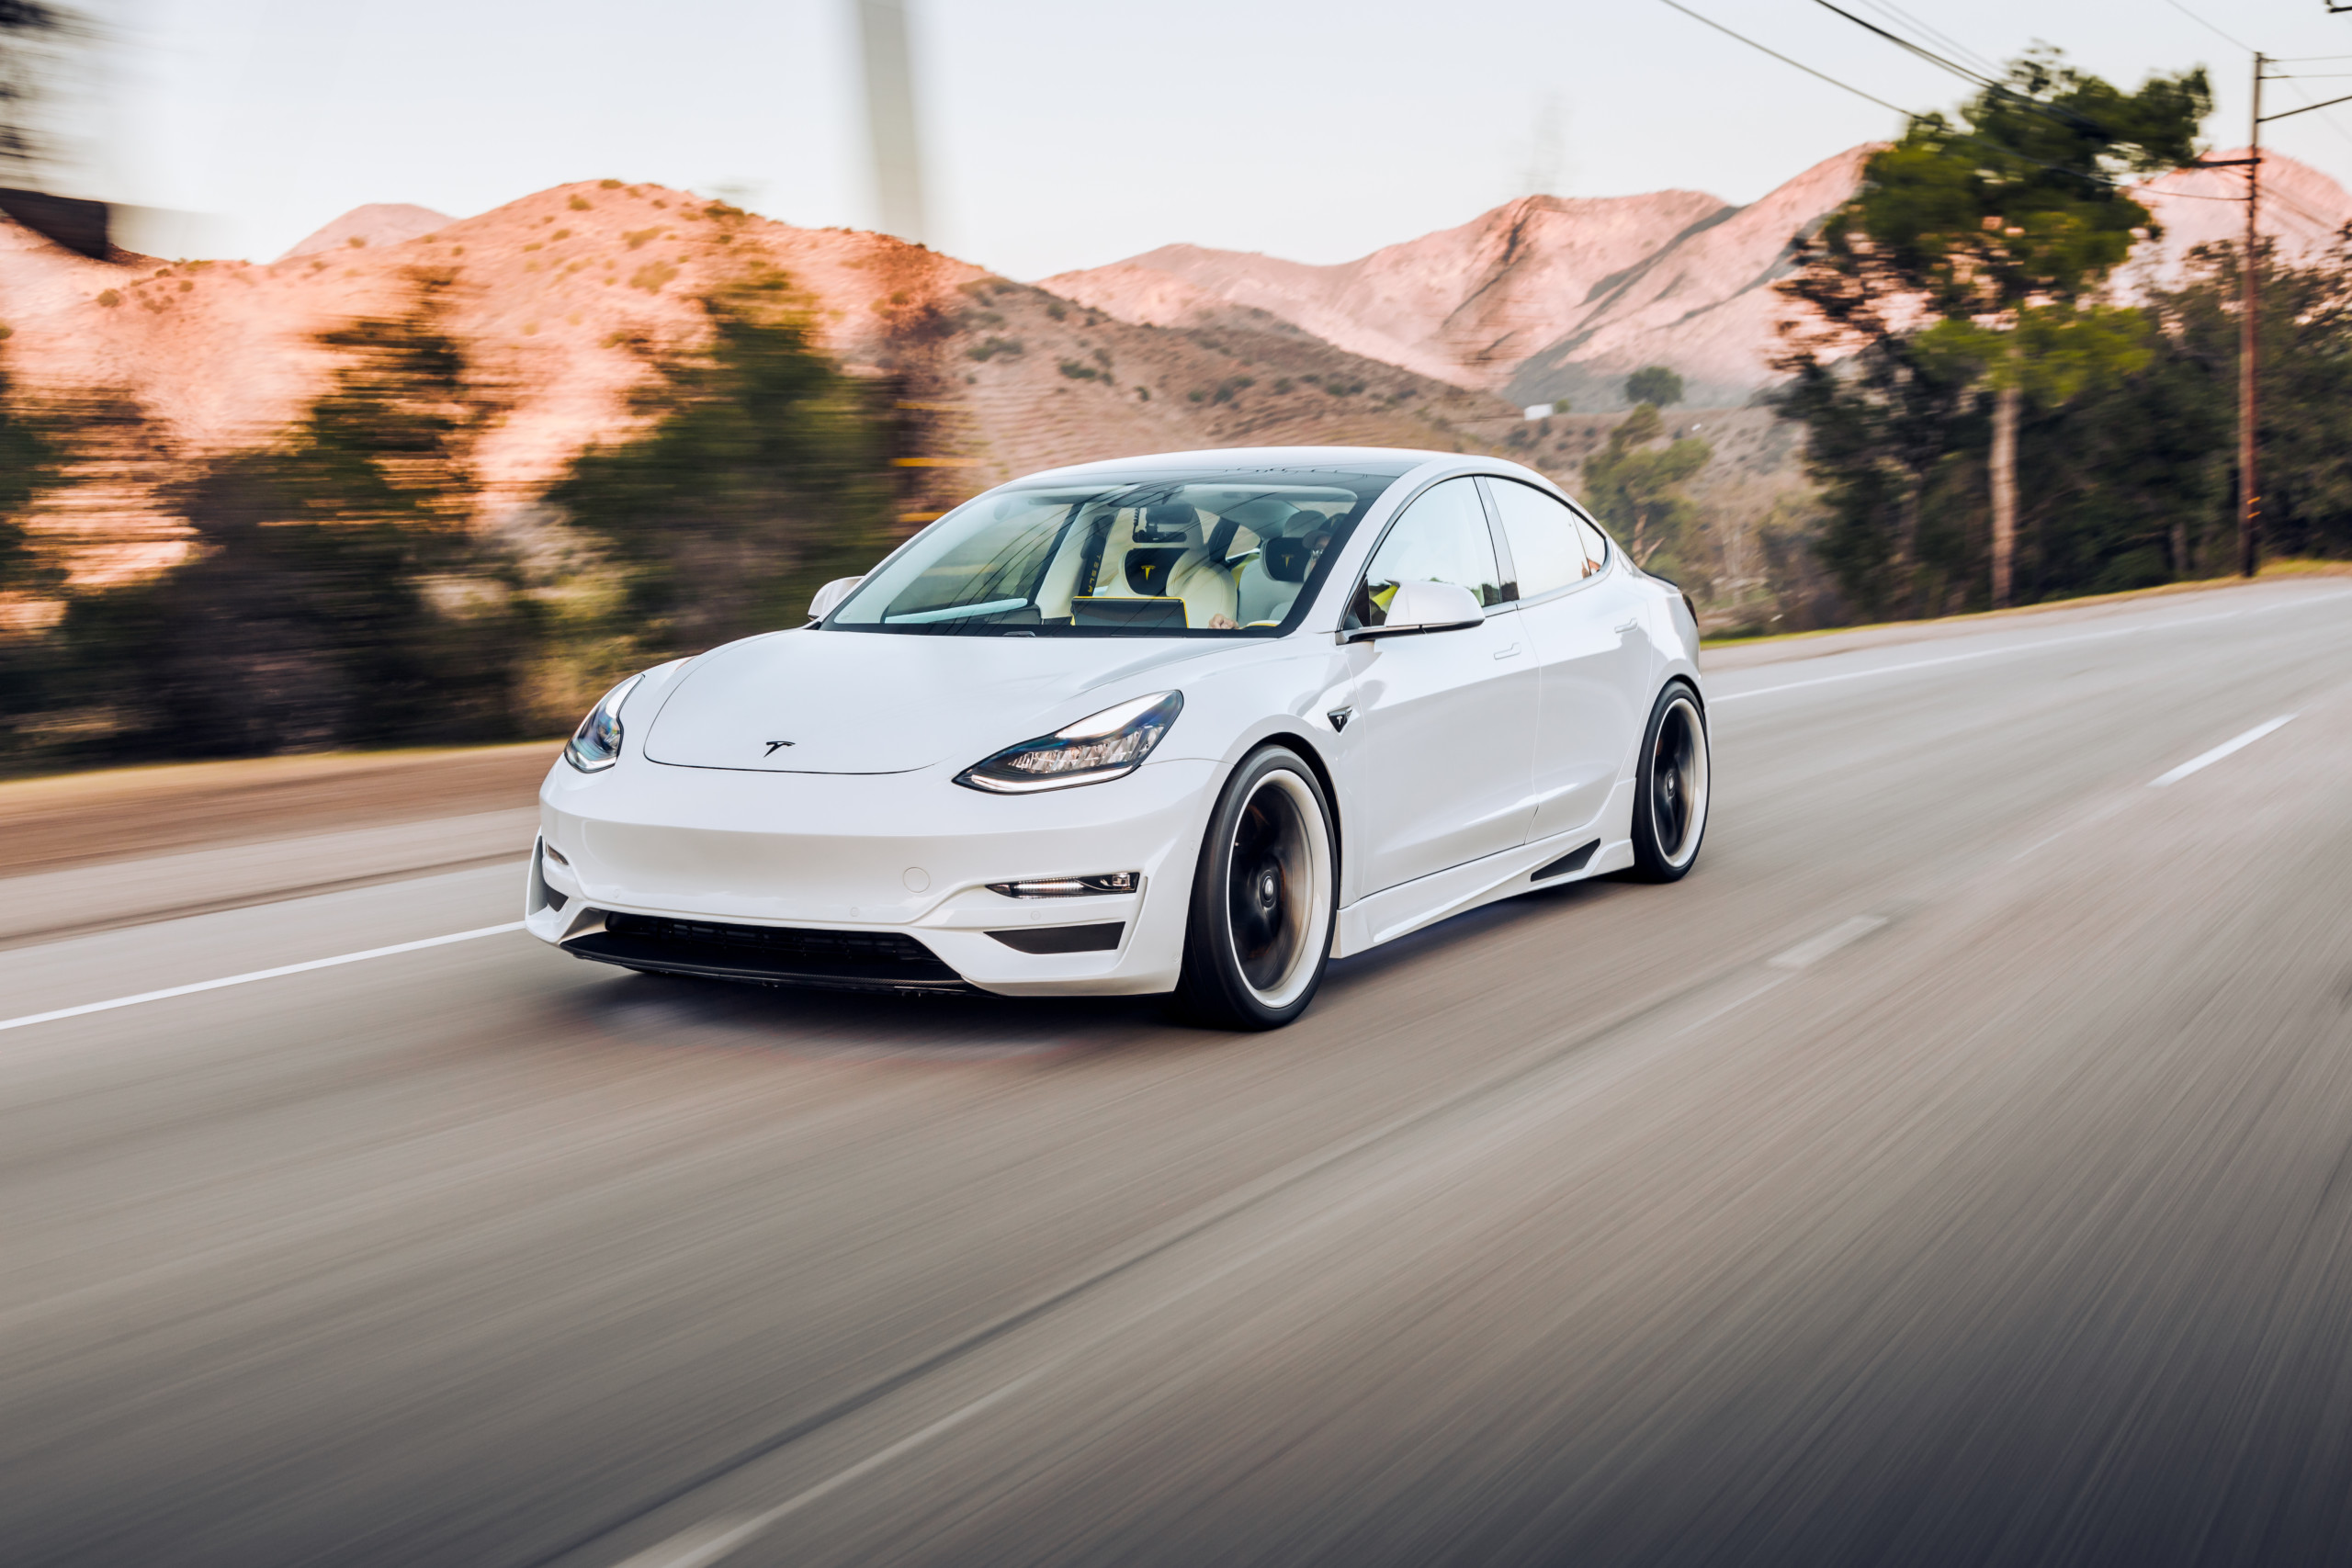 Tesla liefert im 4. Quartal mehr Fahrzeuge aus als erwartet – Analystenmeinungen sind aber teils kritisch